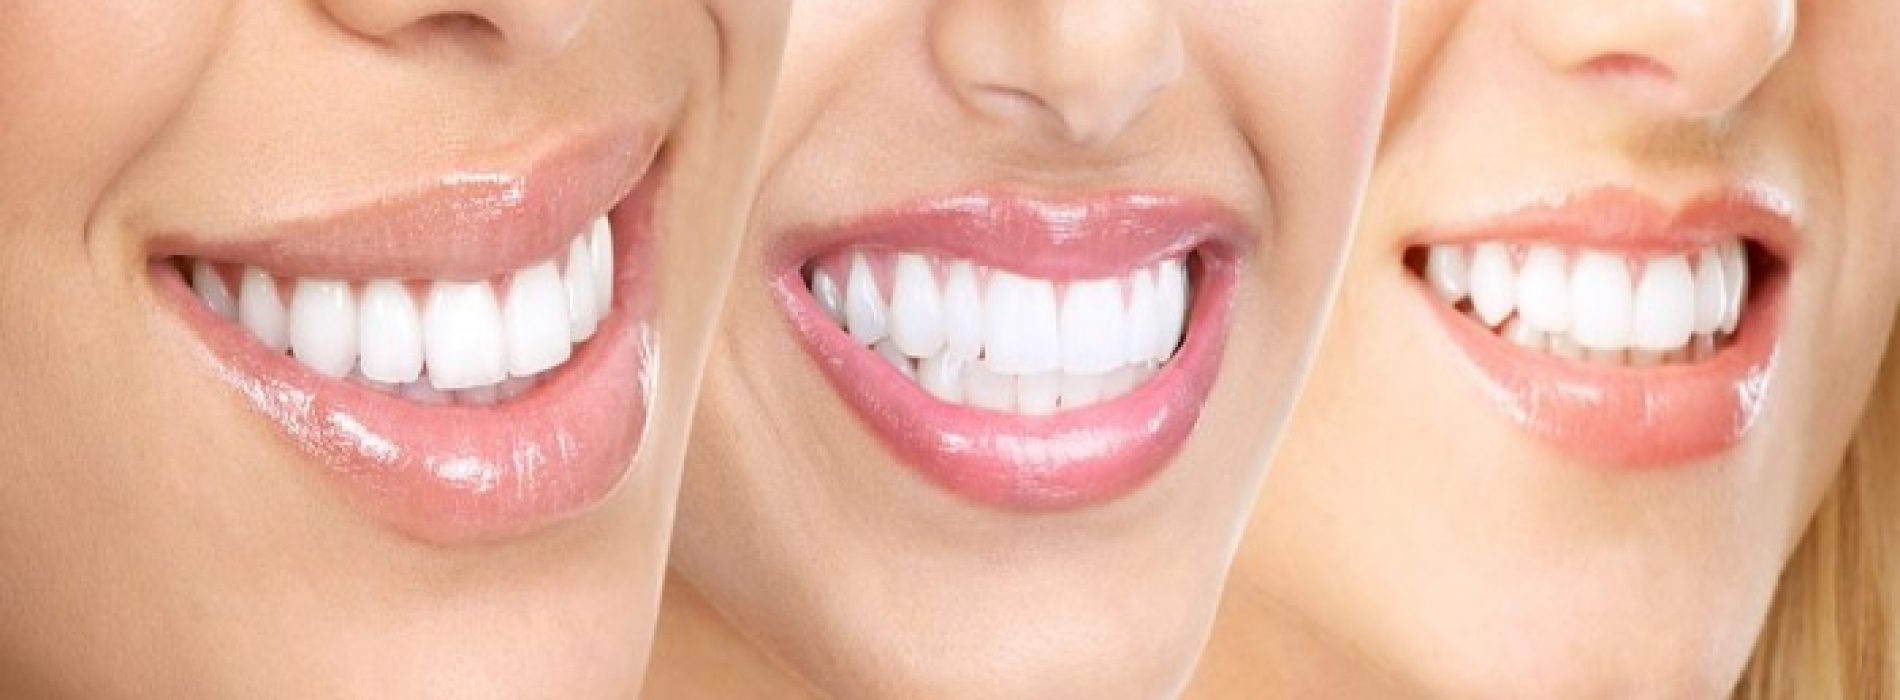 15 tips voor witte tanden op natuurlijke wijze